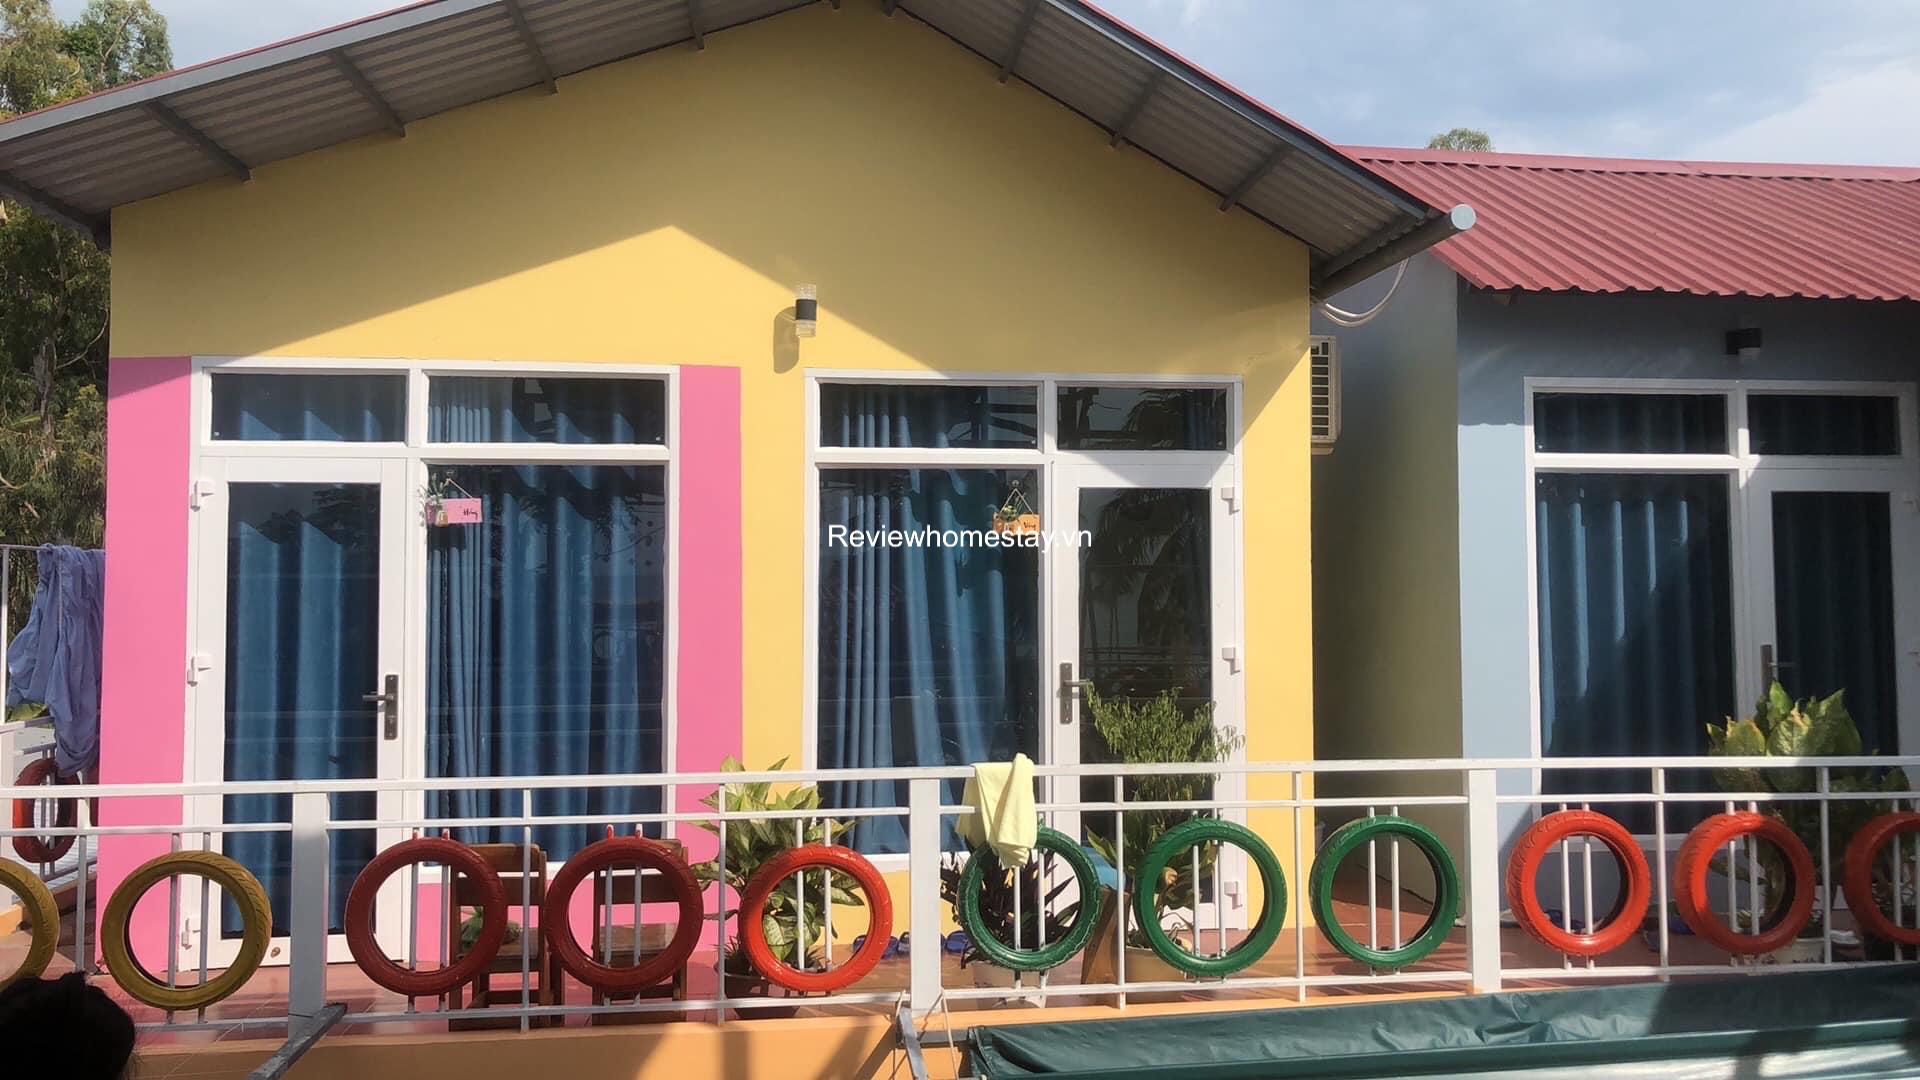 Top 20 Resort khách sạn nhà nghỉ homestay Hòn Sơn giá rẻ đẹp gần biển